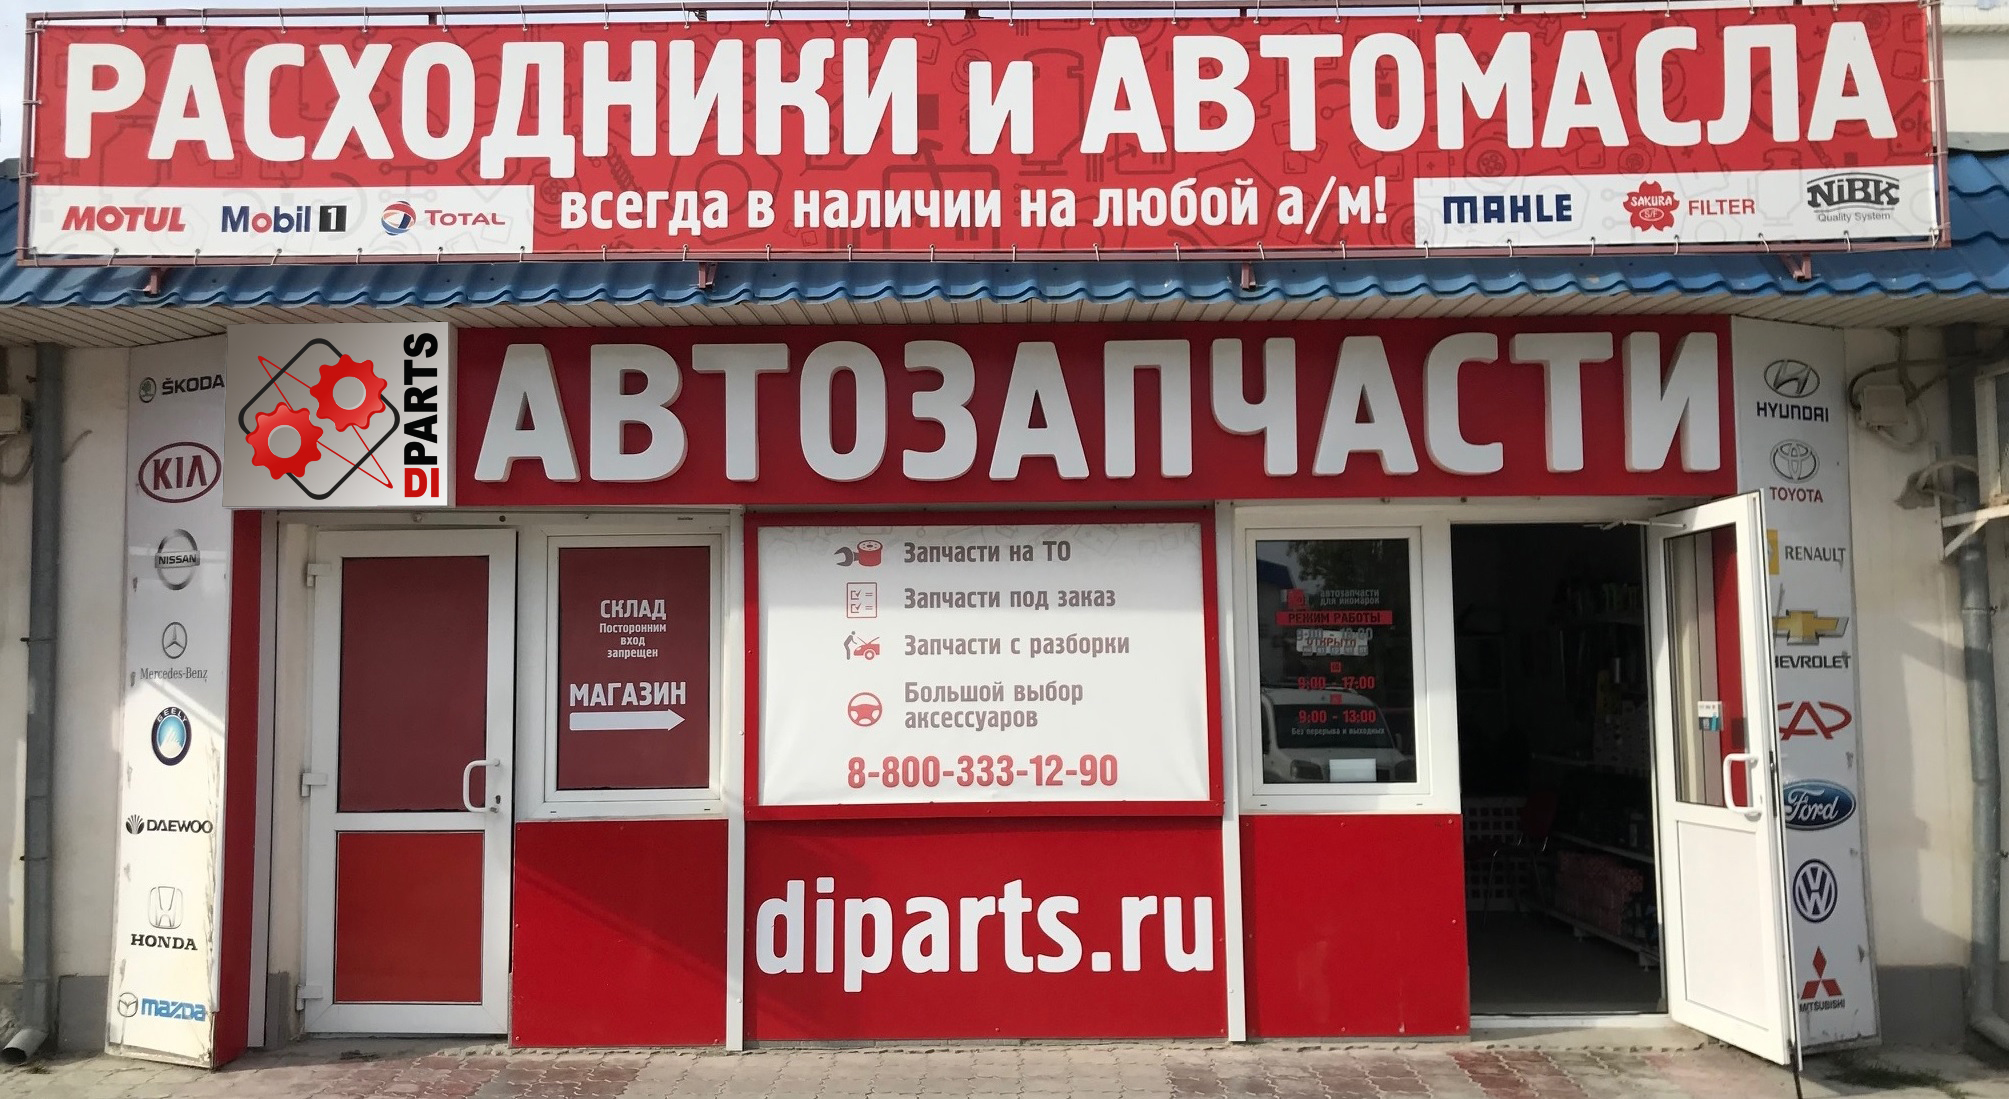 Мобилочка Севастополь Интернет Магазин